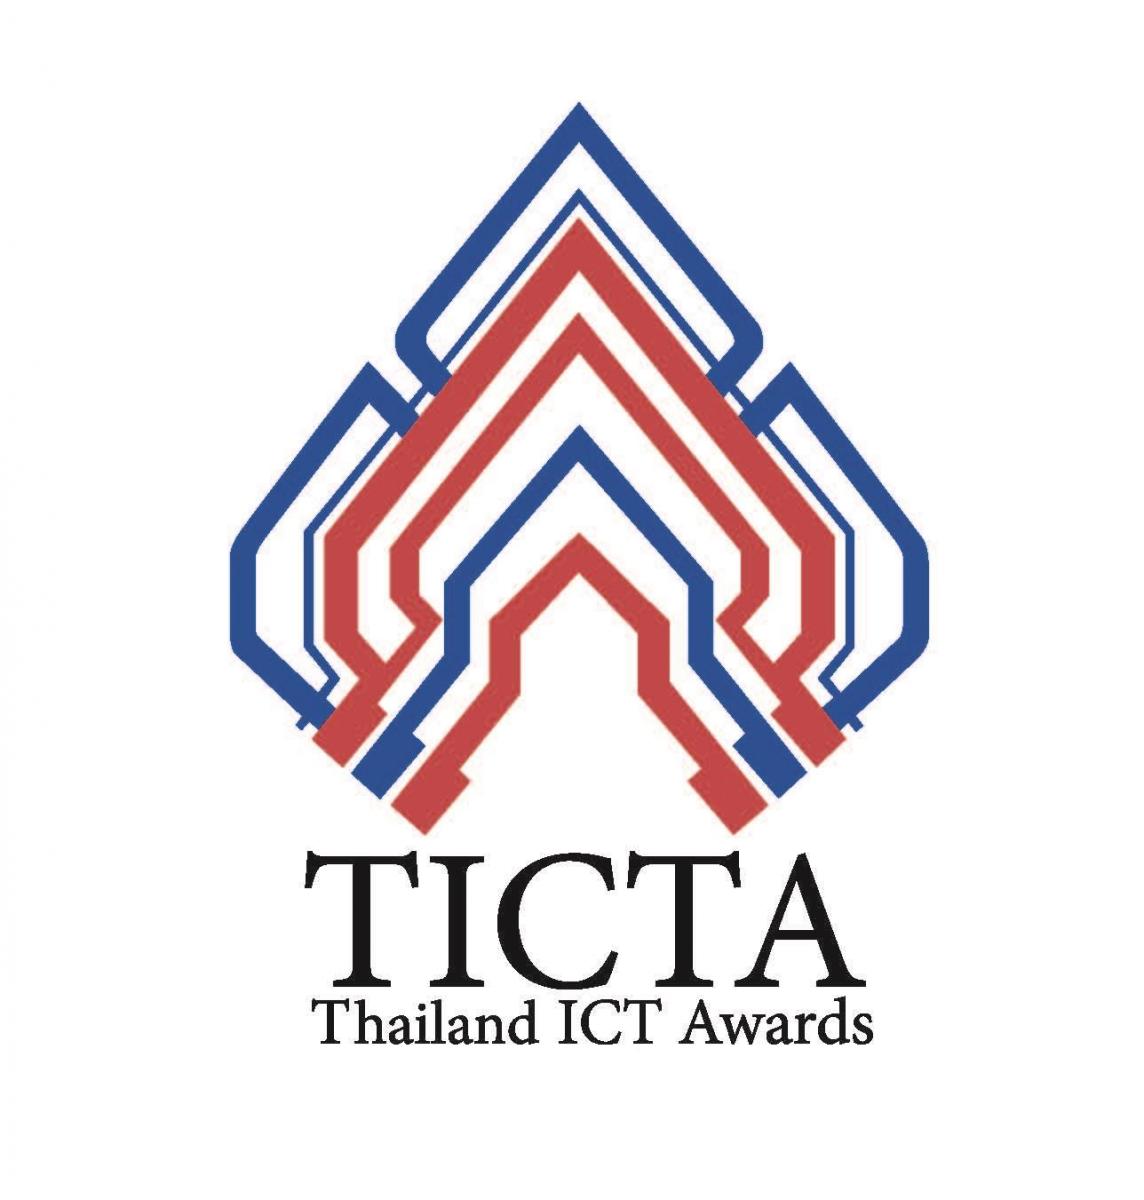 รางวัลด้านซอฟแวร์แห่งชาติ TICTA Awards